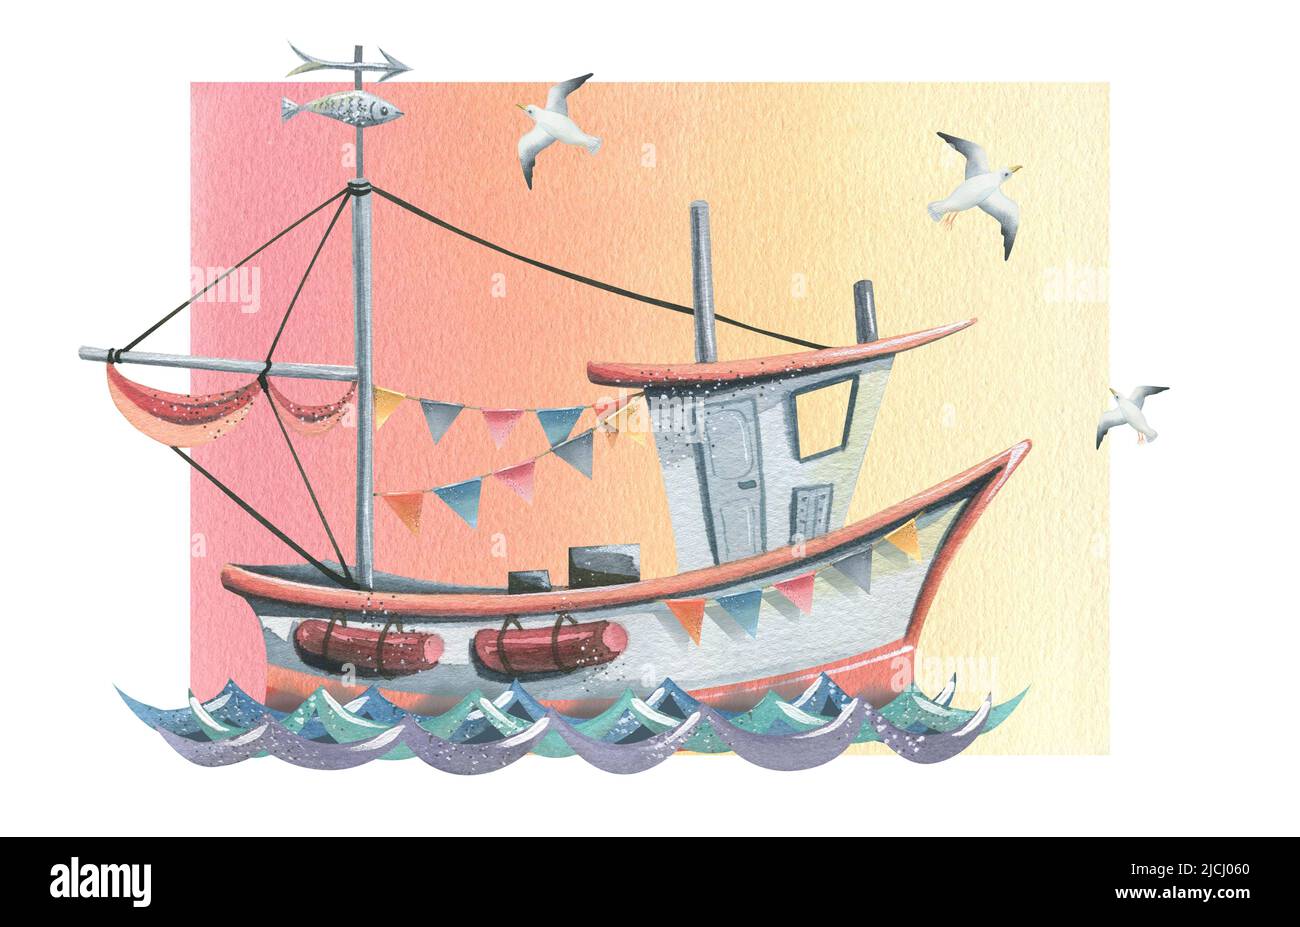 Bateau de pêche avec guirlande de drapeaux sur les vagues avec mouettes sur le fond. Illustration aquarelle. Composition pour la décoration, conception de postc Banque D'Images